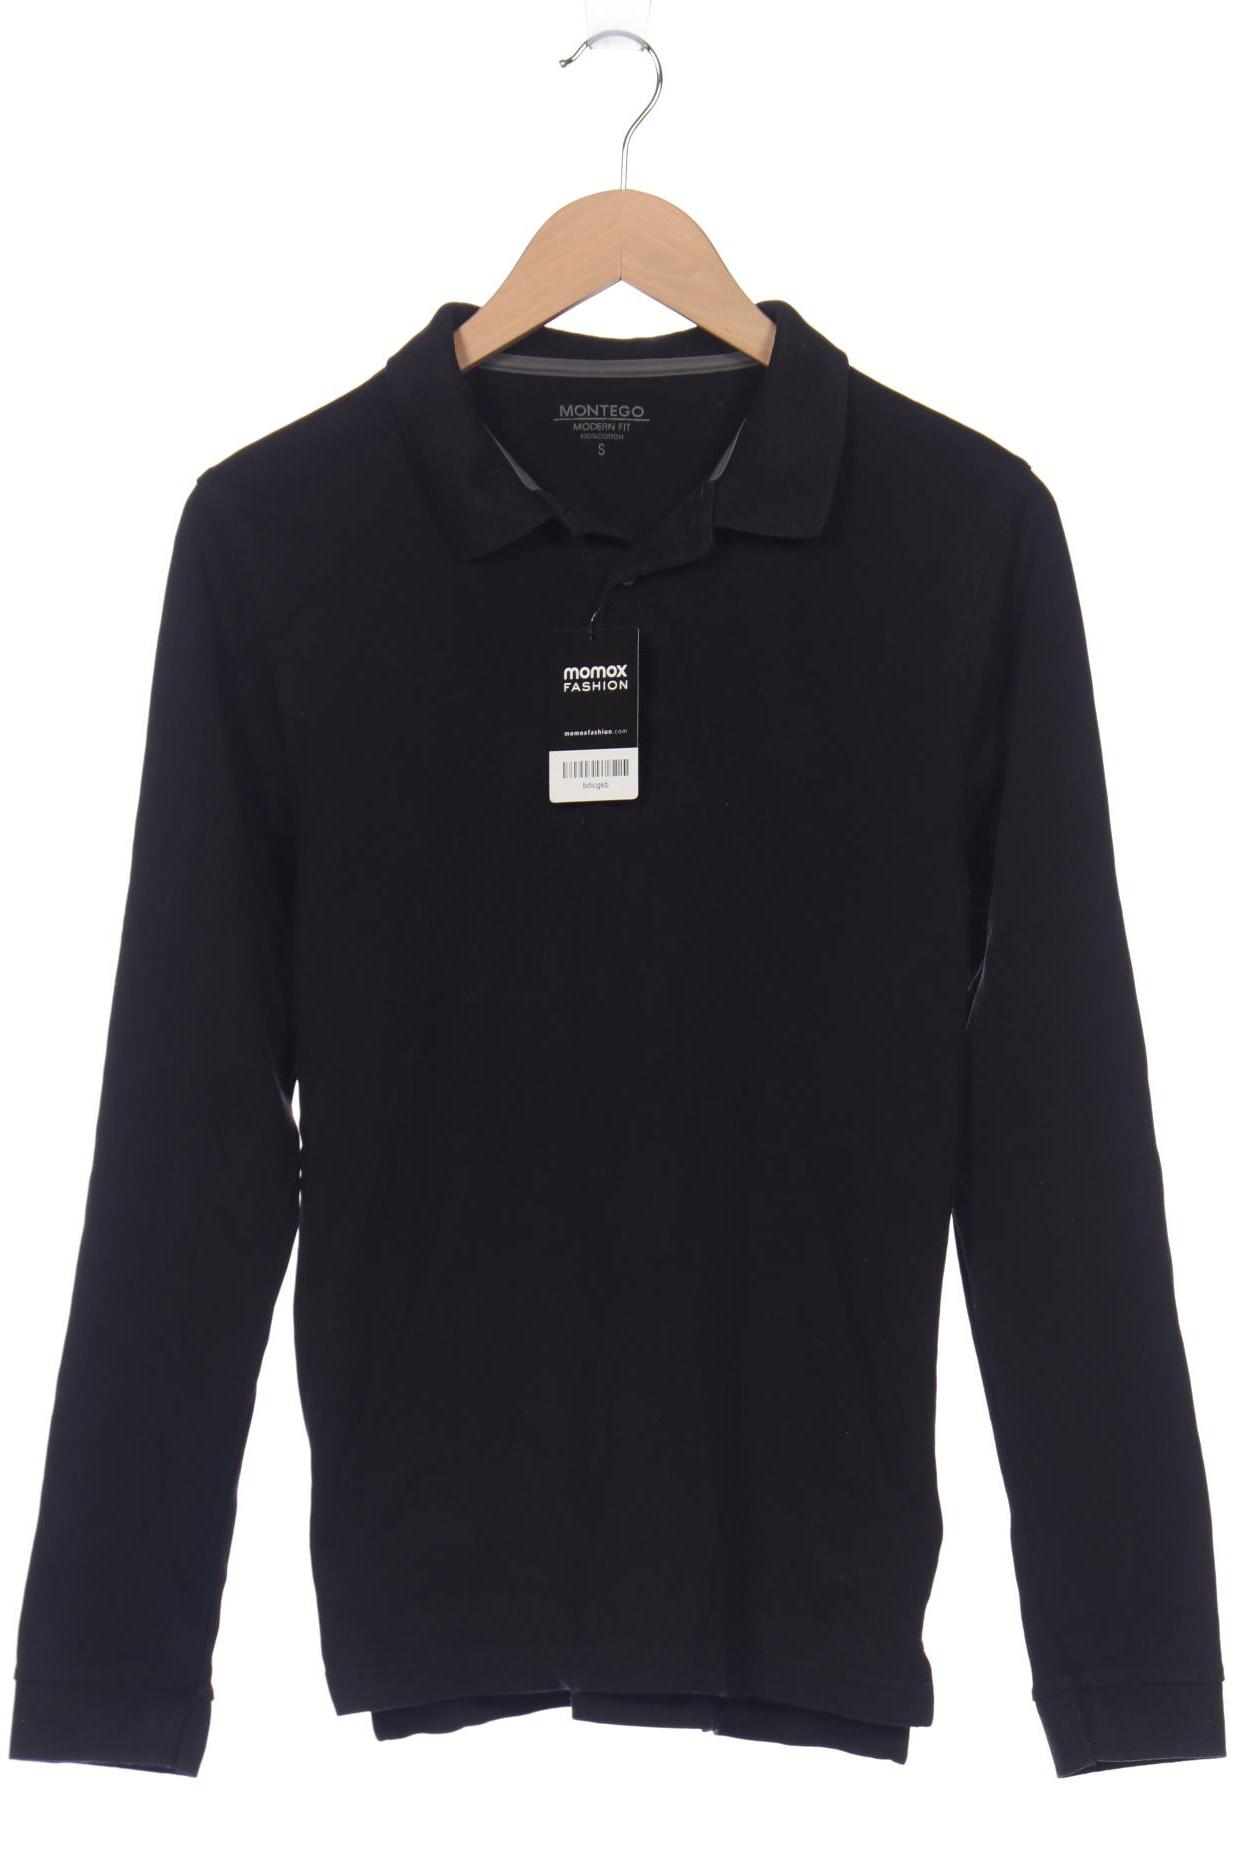 Montego Herren Poloshirt, schwarz, Gr. 46 von montego